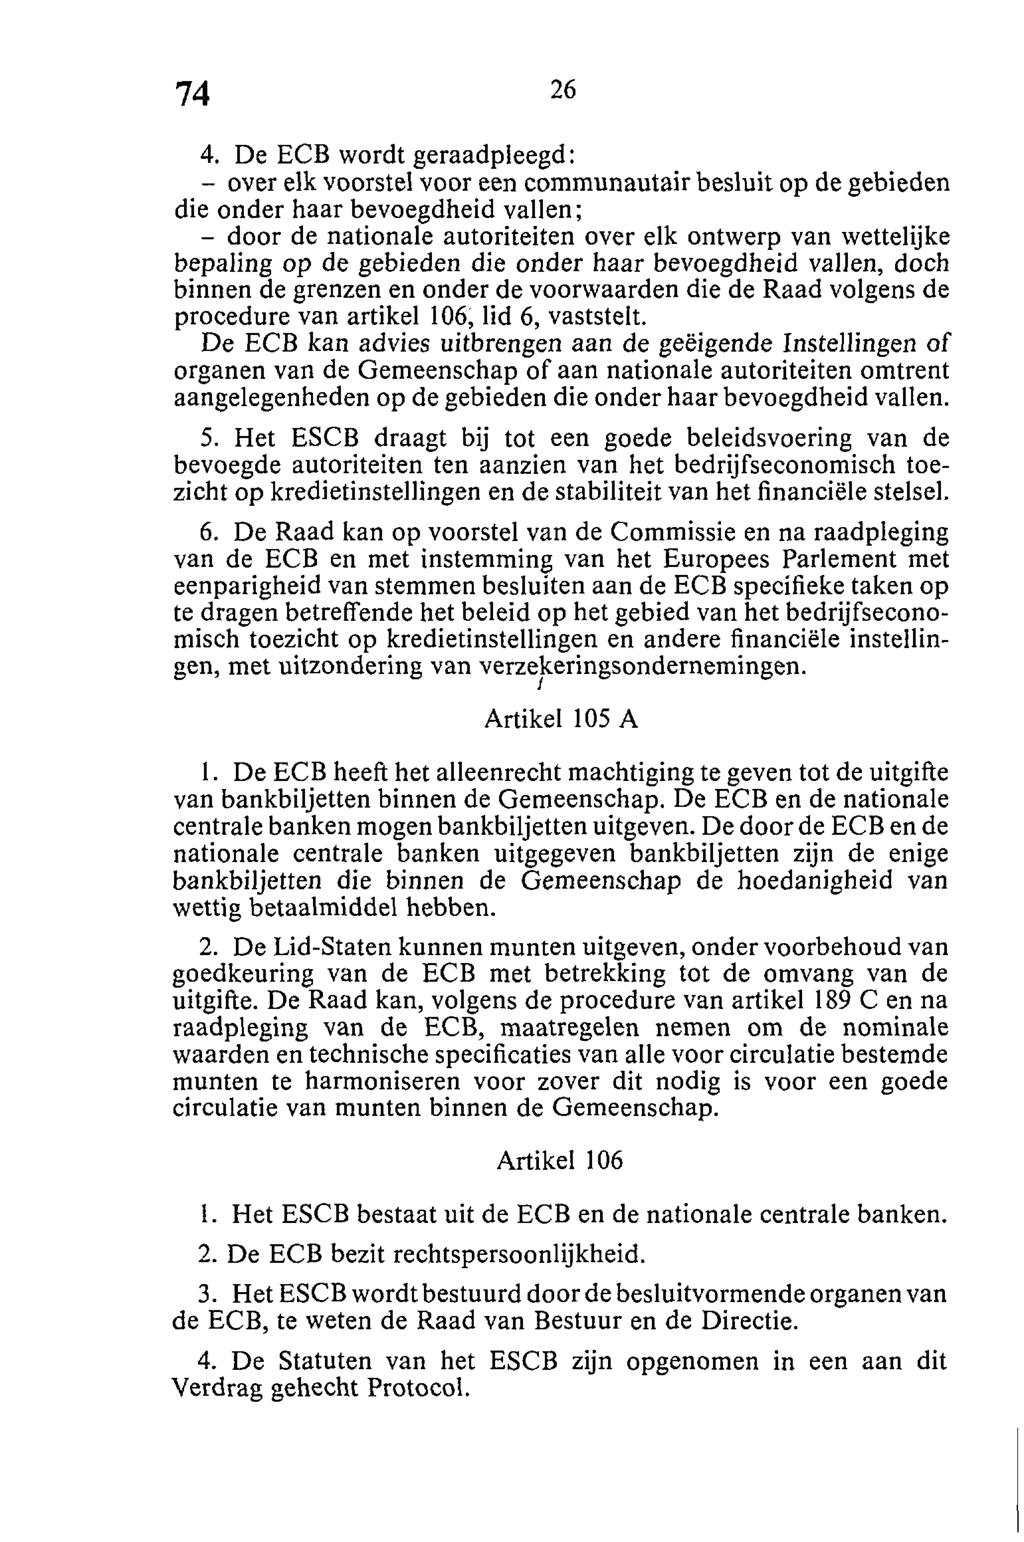 4. De ECB wordt geraadpleegd: - over elk voorstel voor een communautair besluit op de gebieden die onder haar bevoegdheid vallen; - door de nationale autoriteiten over elk ontwerp van wettelijke